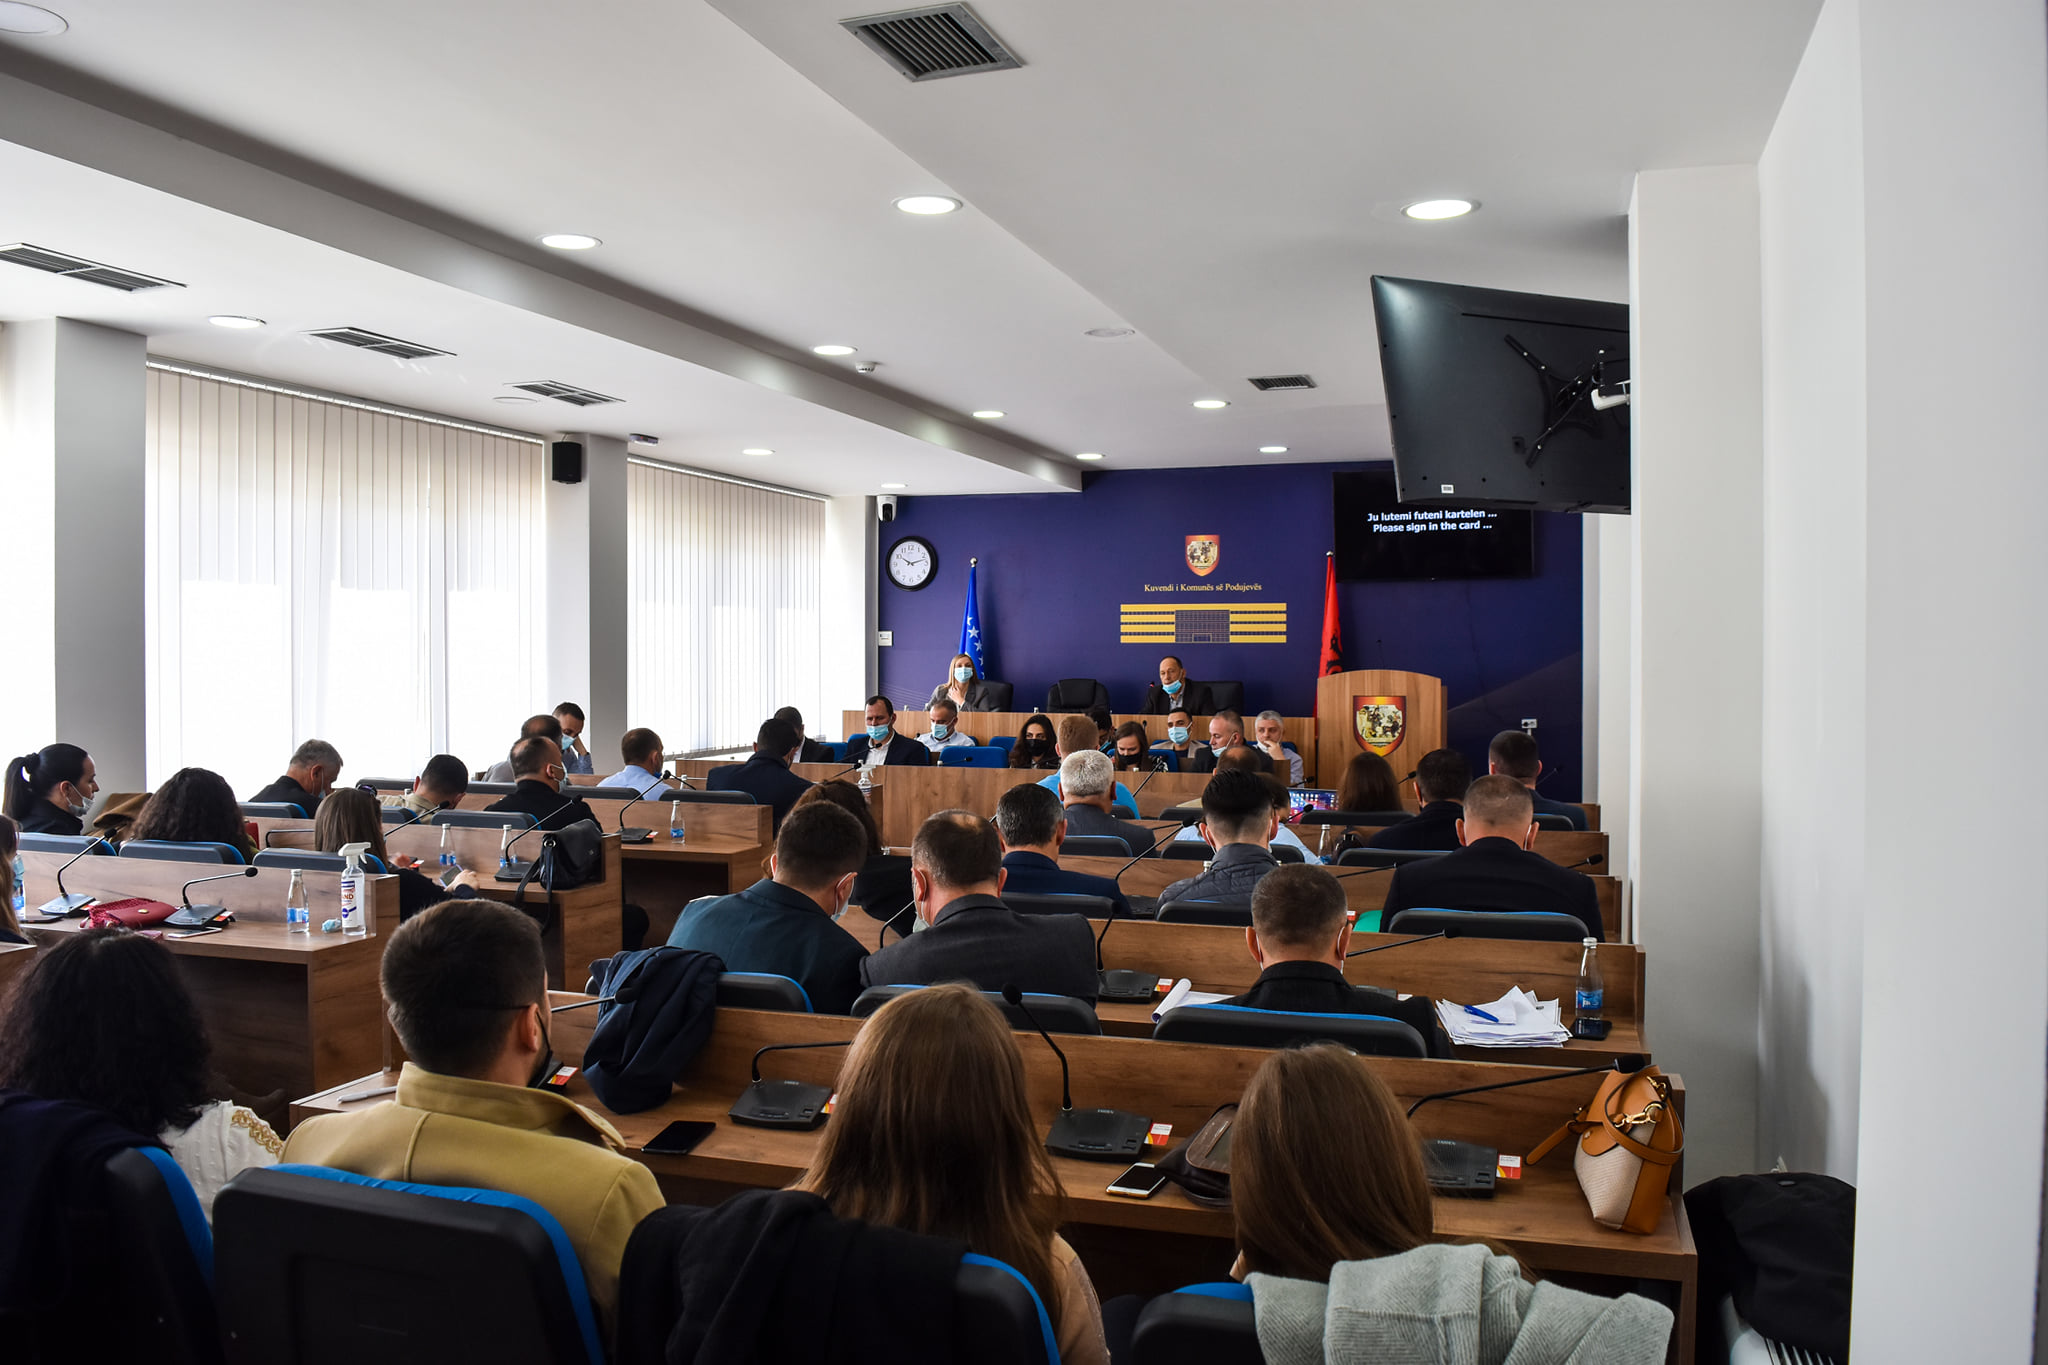  Asambleistja e VV-së: Mos i bëni gabimet e njëjta sikurse pushteti i kaluar në Podujevë